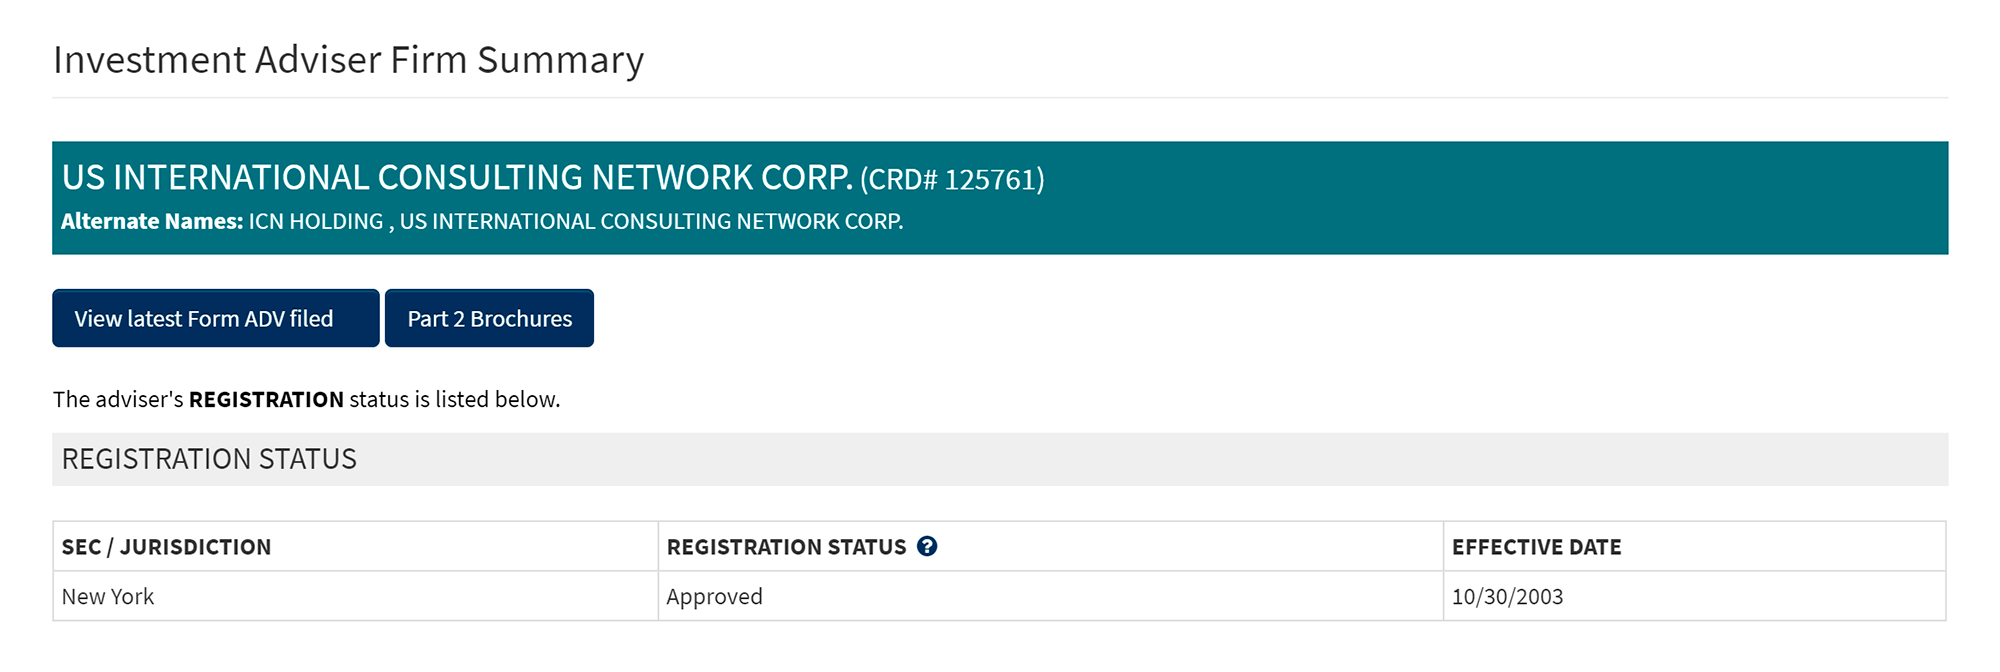 Из всех компаний с сайта ICN я нашел регистрацию только для US International Consulting Network Corp. — в базе данных публичных инвестиционных советников США